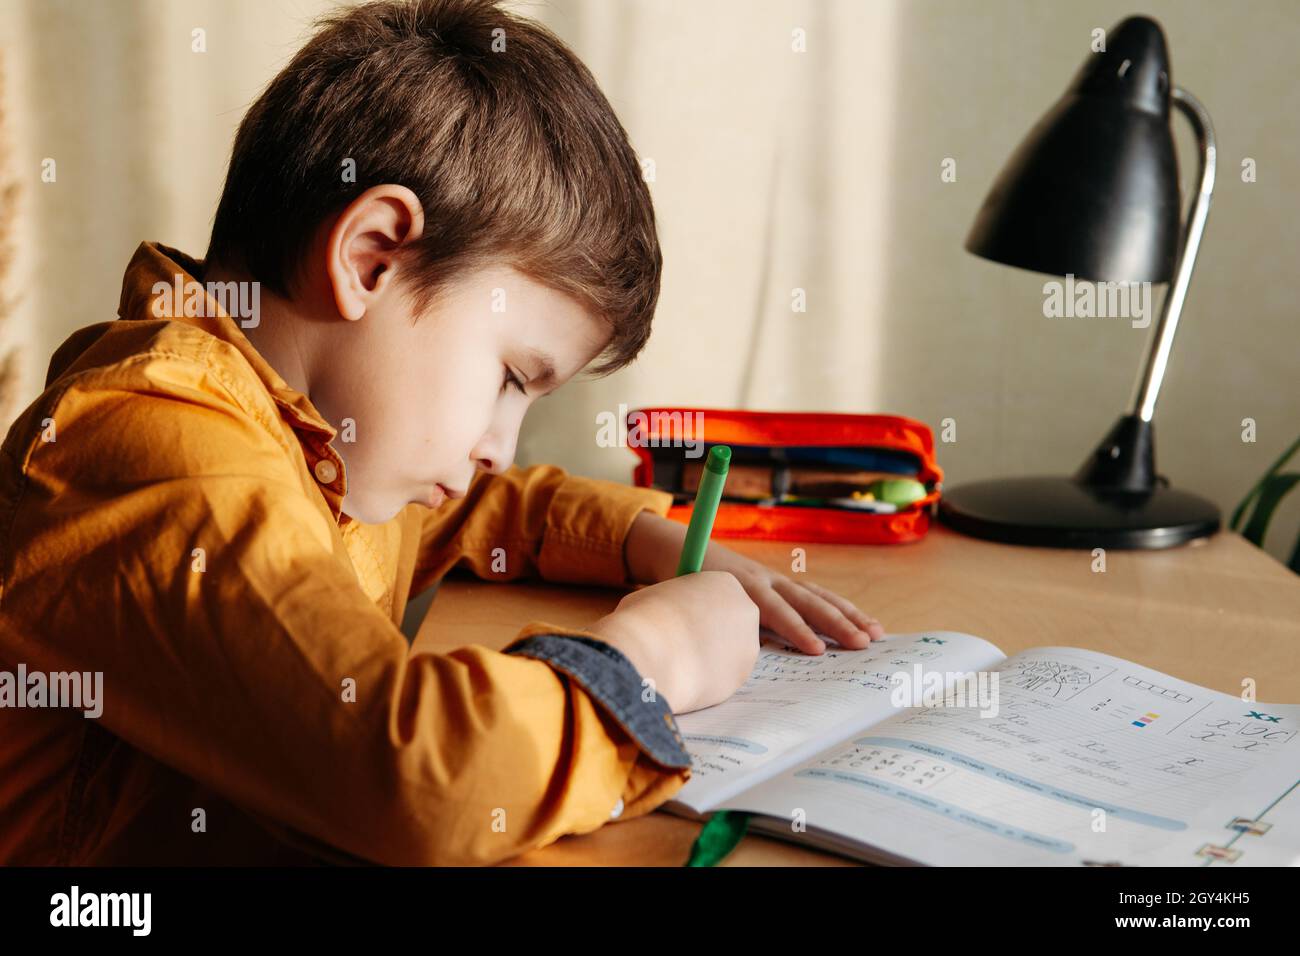 Niedliches 7-jähriges Kind, das seine Hausaufgaben am Schreibtisch macht. Junge schreibt im Notizbuch. Seitenansicht Stockfoto